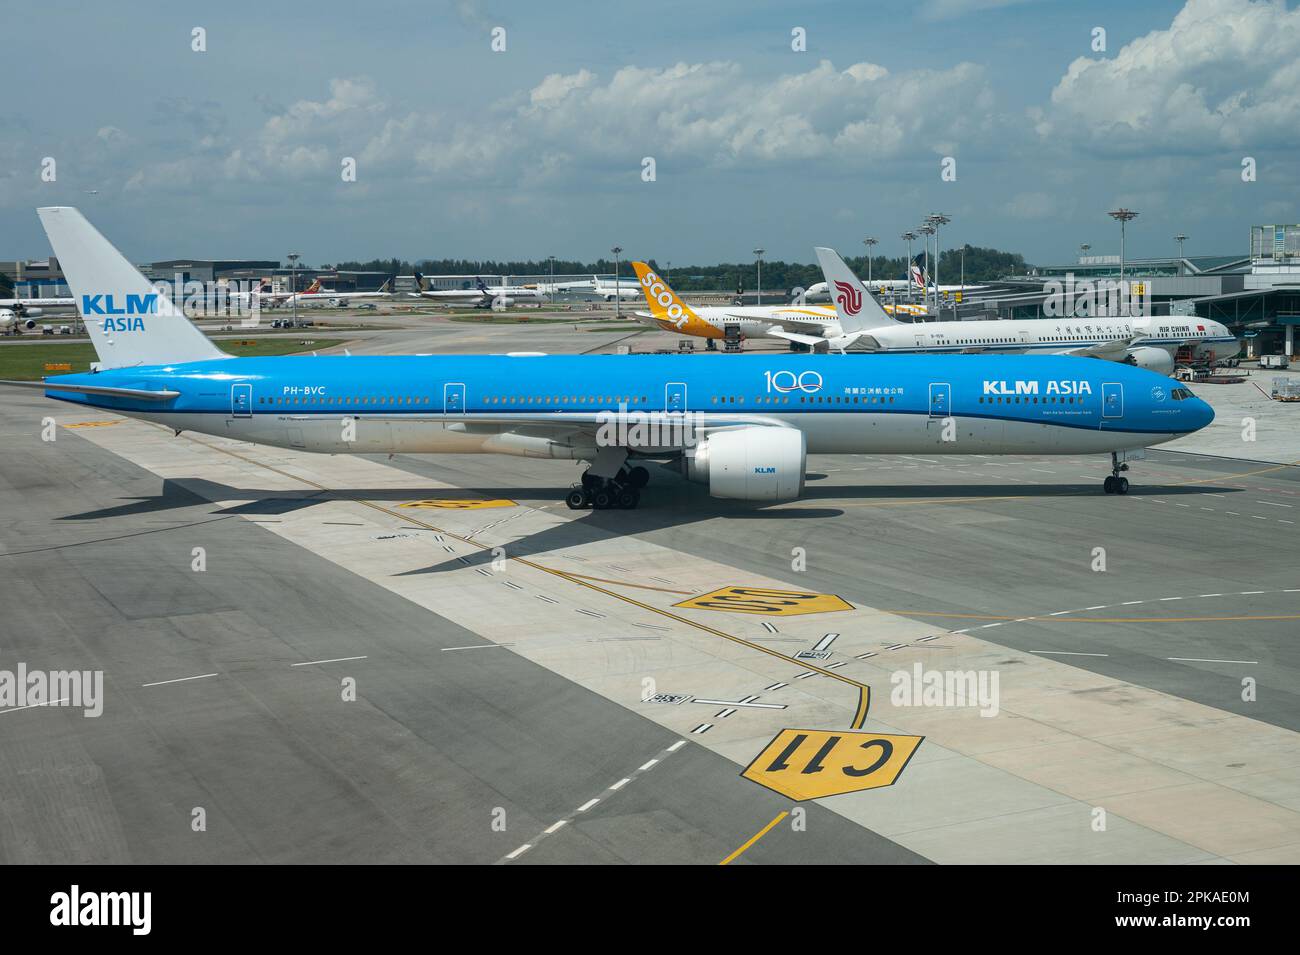 28.08.2020, République de Singapour, , Singapur - Un avion de passagers KLM Asia de type Boeing 777-300ER immatriculé pH-BVC au terminal 1 de Chang Banque D'Images